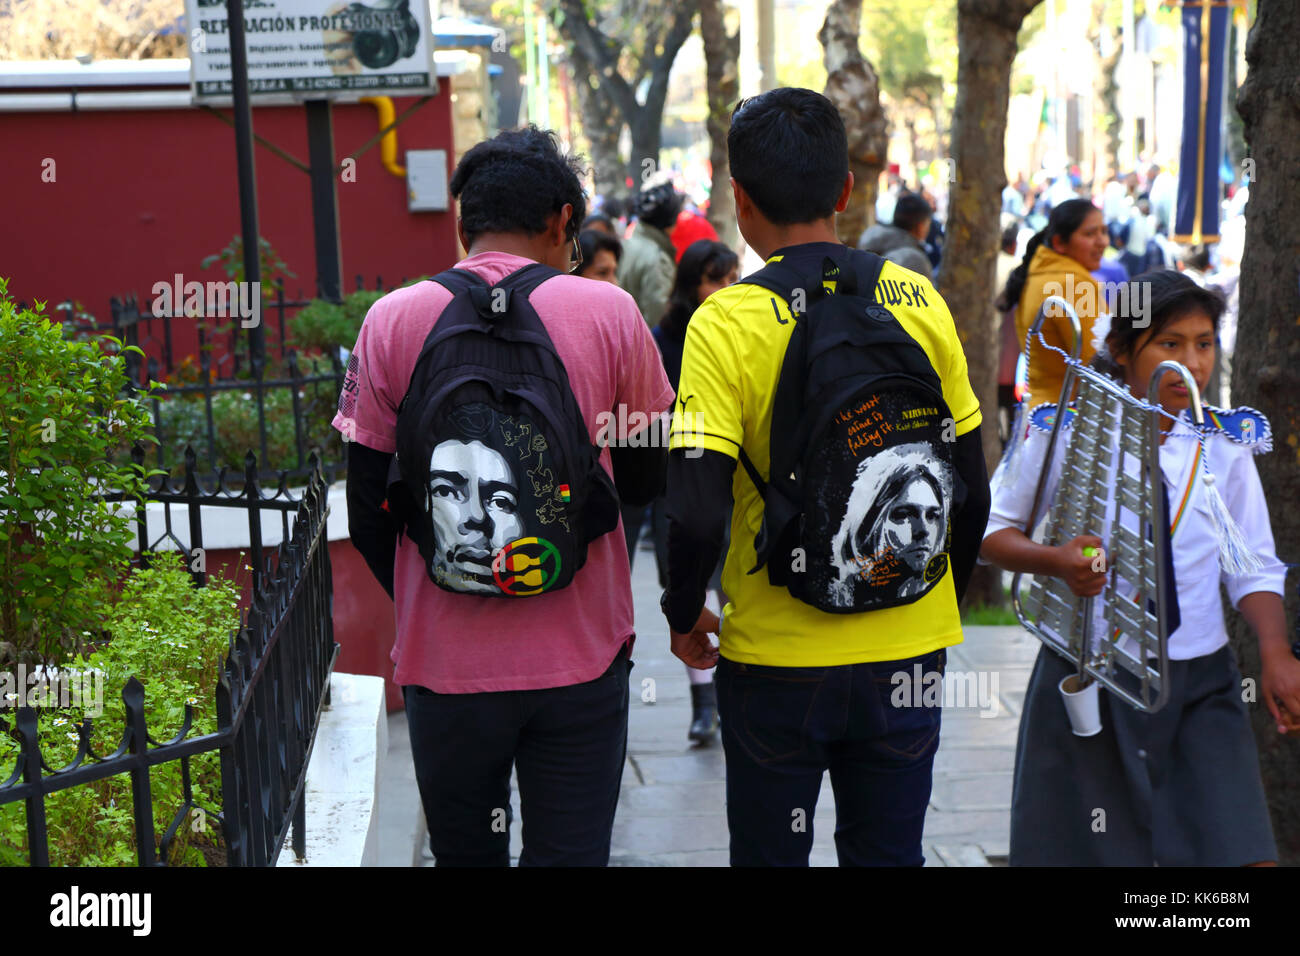 Les jeunes portant des sacs à dos avec le visage de jimi hendrix (l) et Kurt Cobain (r) sur eux en marchant dans la rue, La Paz, Bolivie Banque D'Images